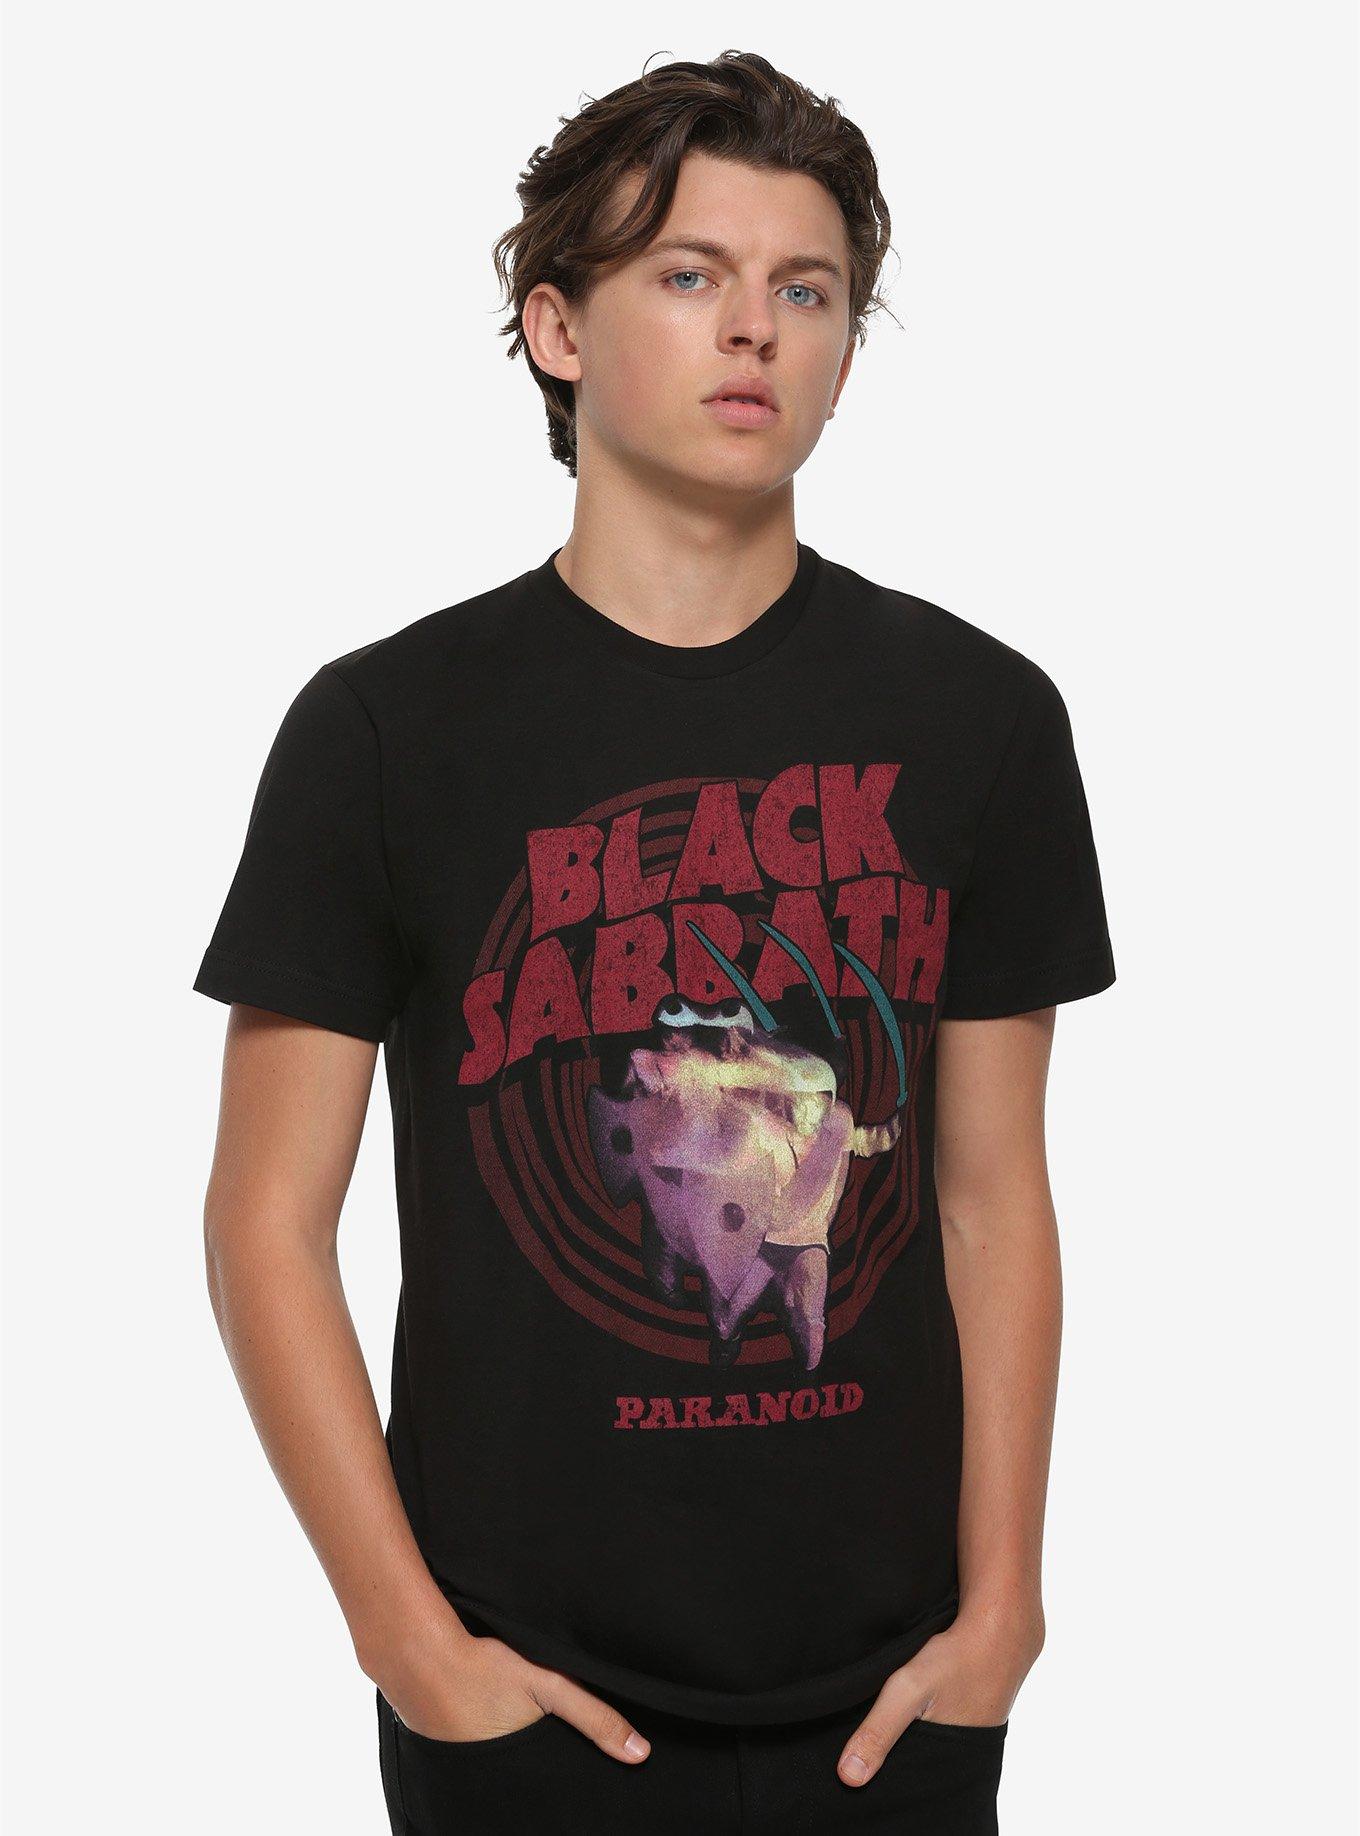 Black Sabbath Paranoid Album Cover T-Shirt, BLACK, alternate